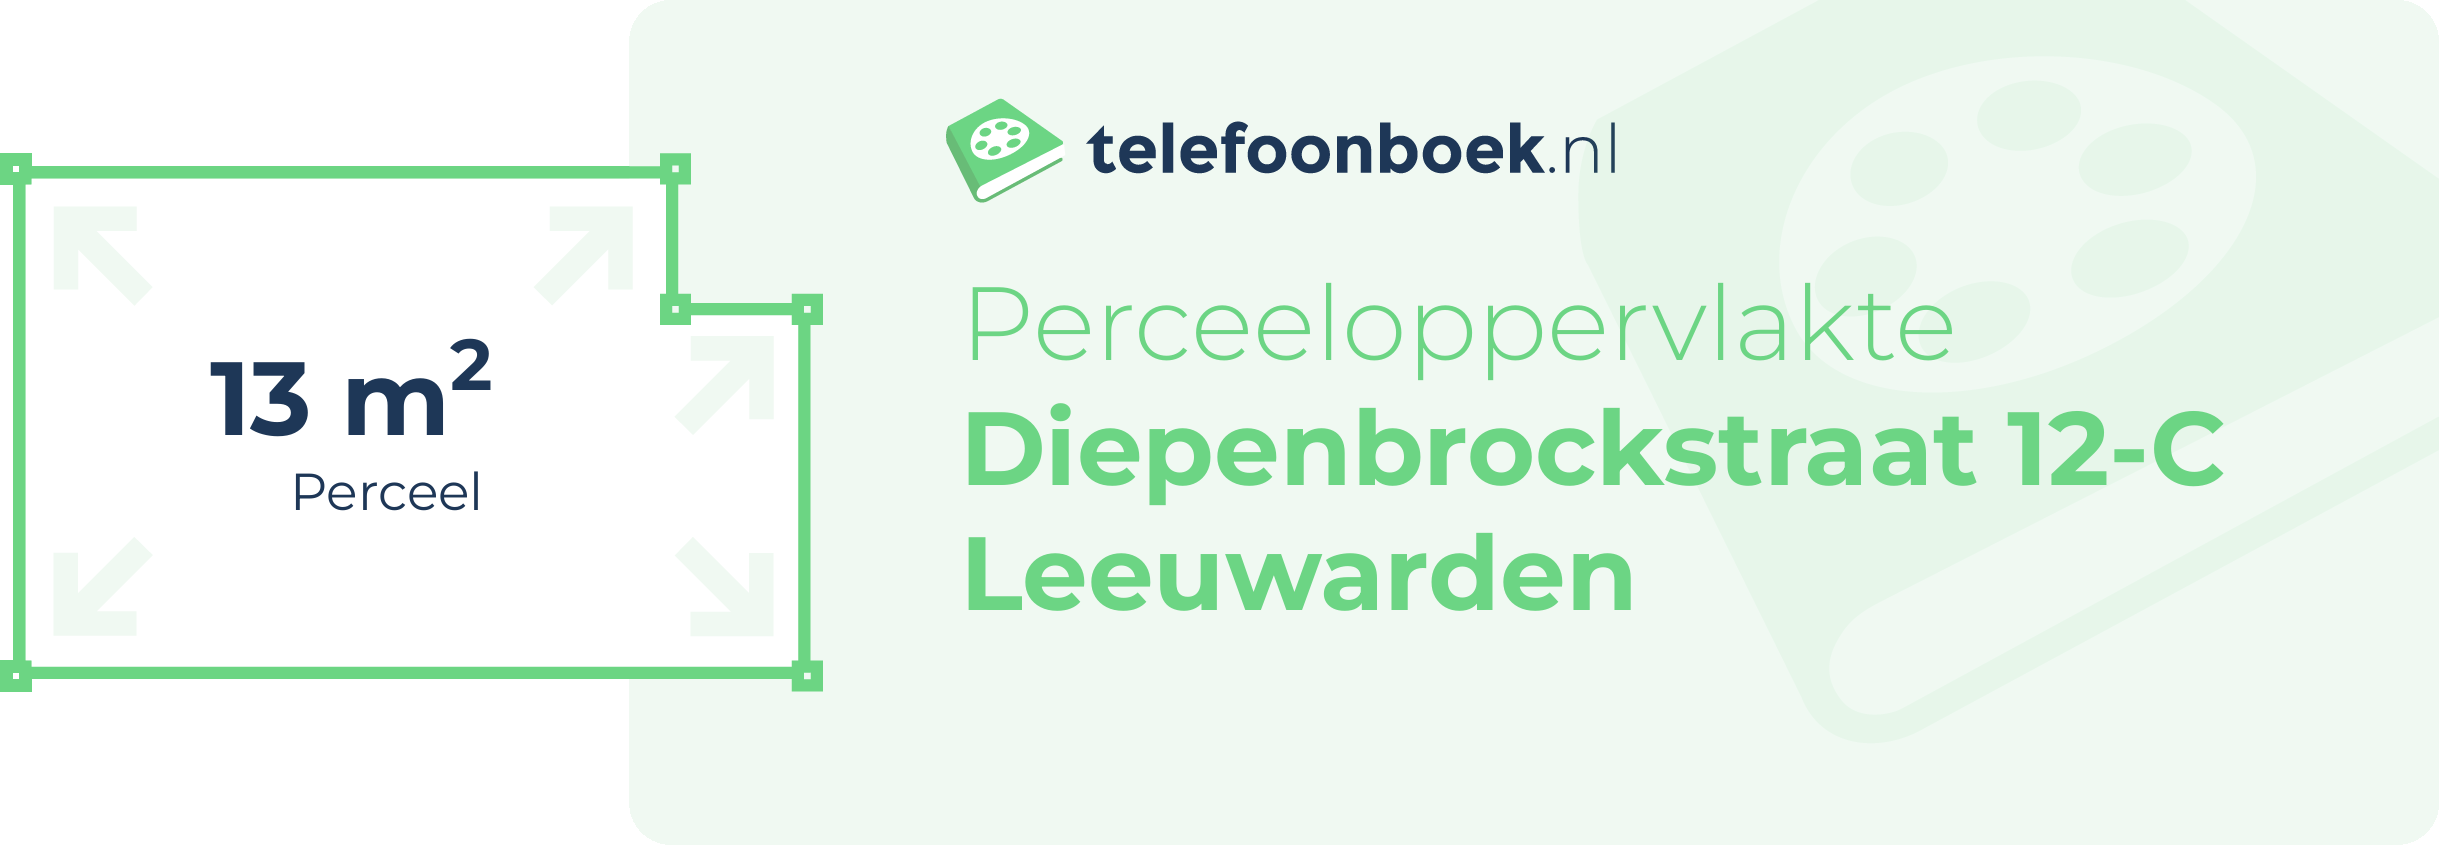 Perceeloppervlakte Diepenbrockstraat 12-C Leeuwarden